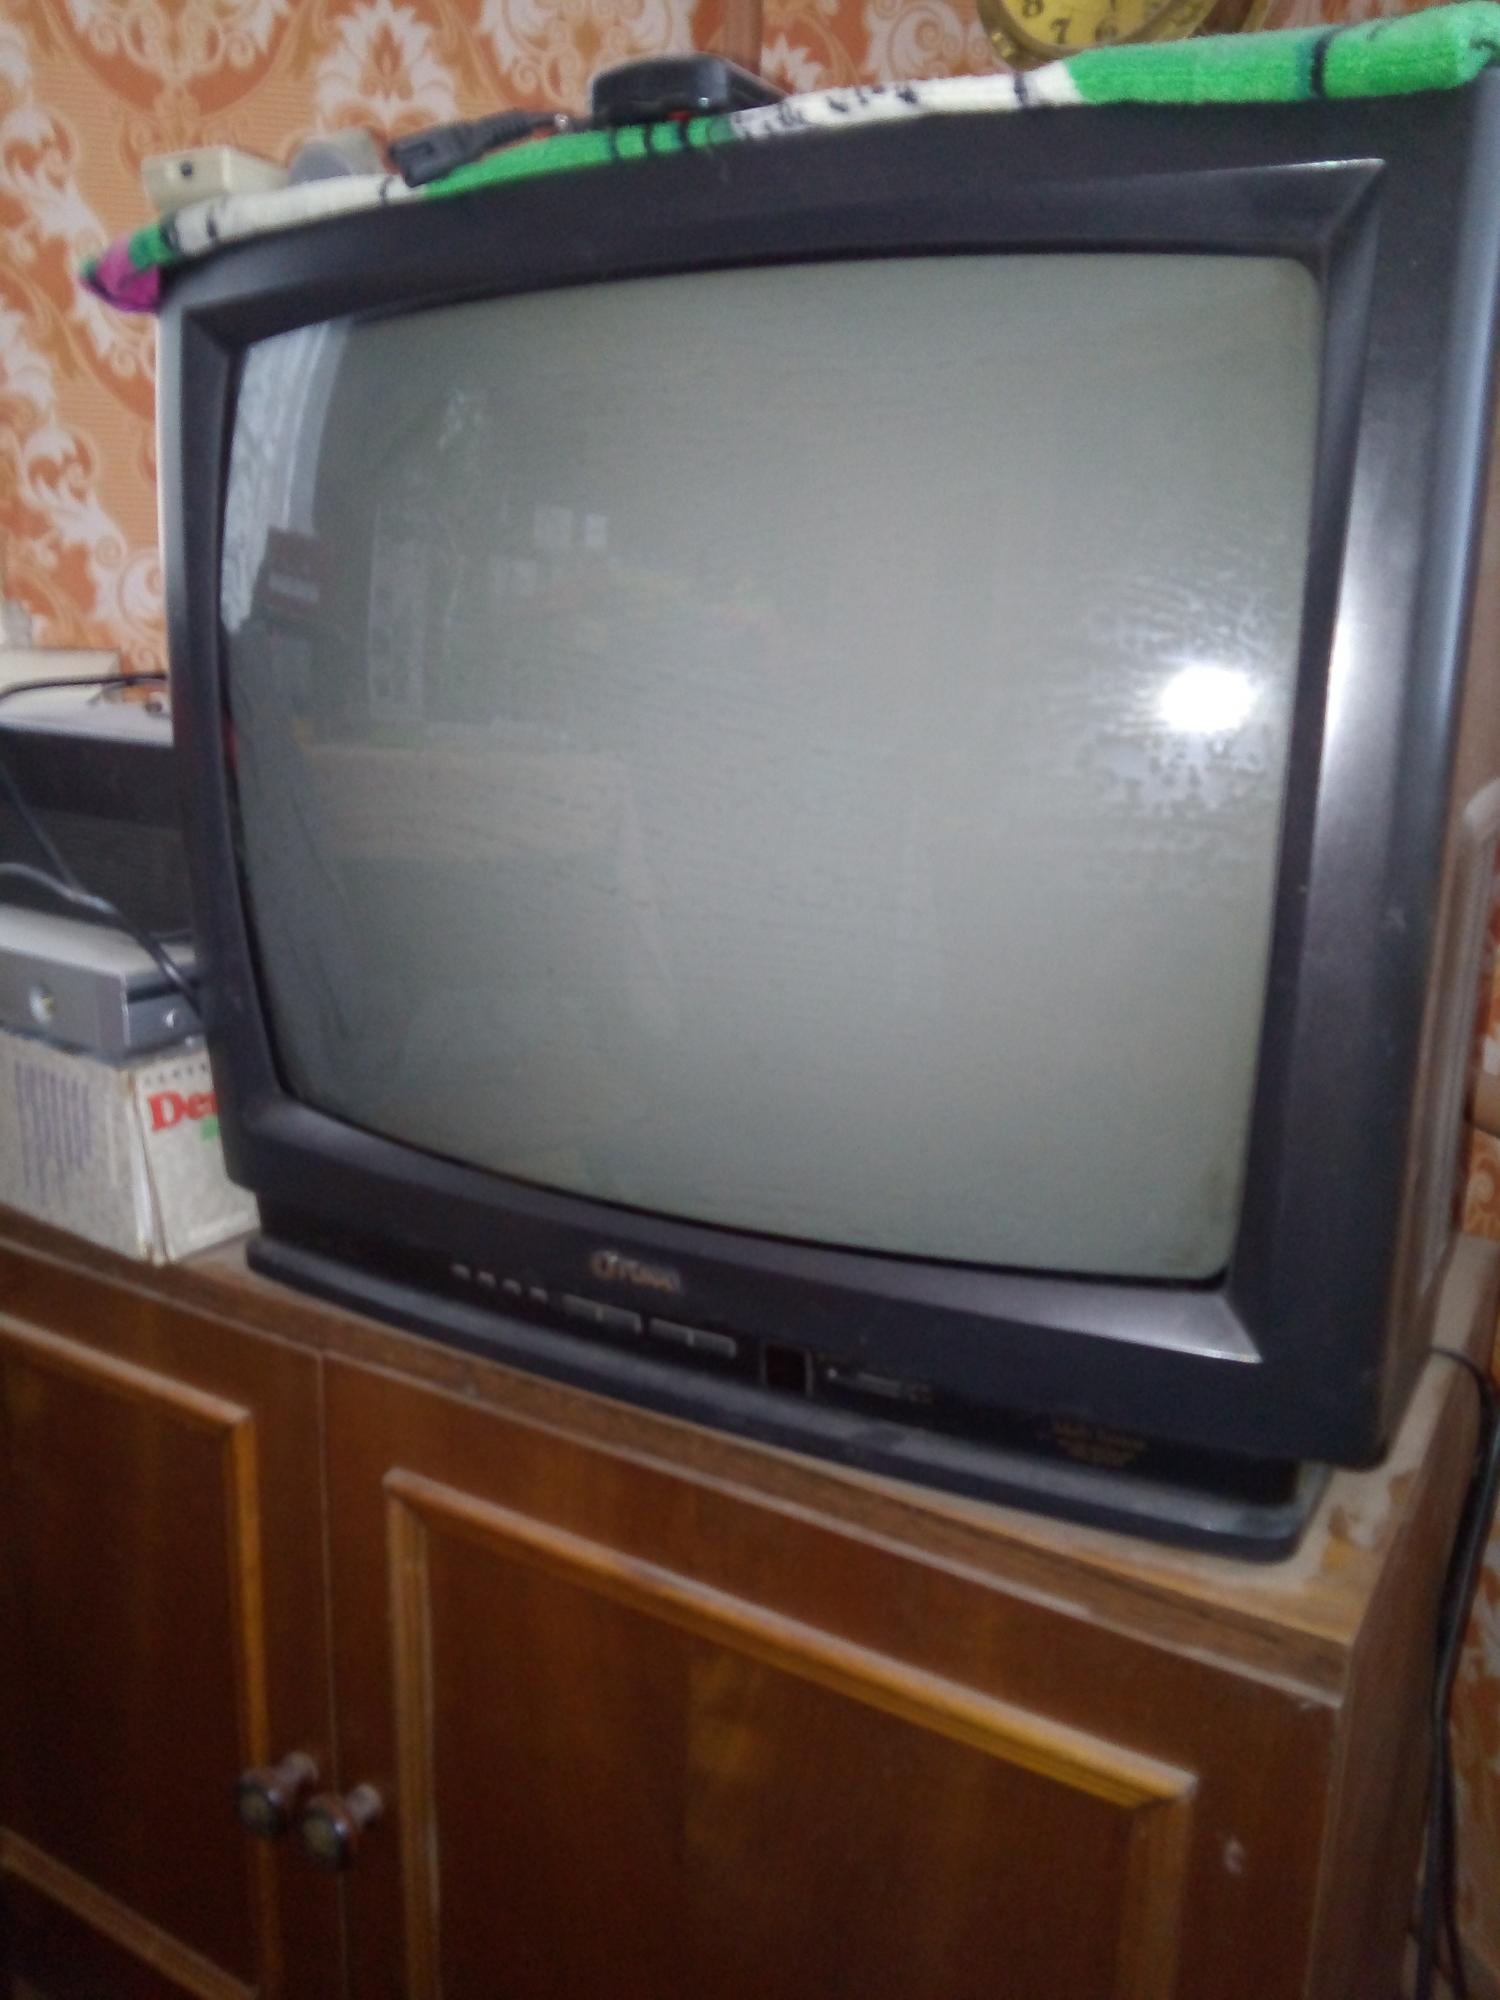 Сдать бу телевизор. Телевизор за 1000. Сдать телевизор на запчасти Вязьма. Продажа бу телевизоров в Архангельске. Сдать телевизор на запчасти в Самаре.